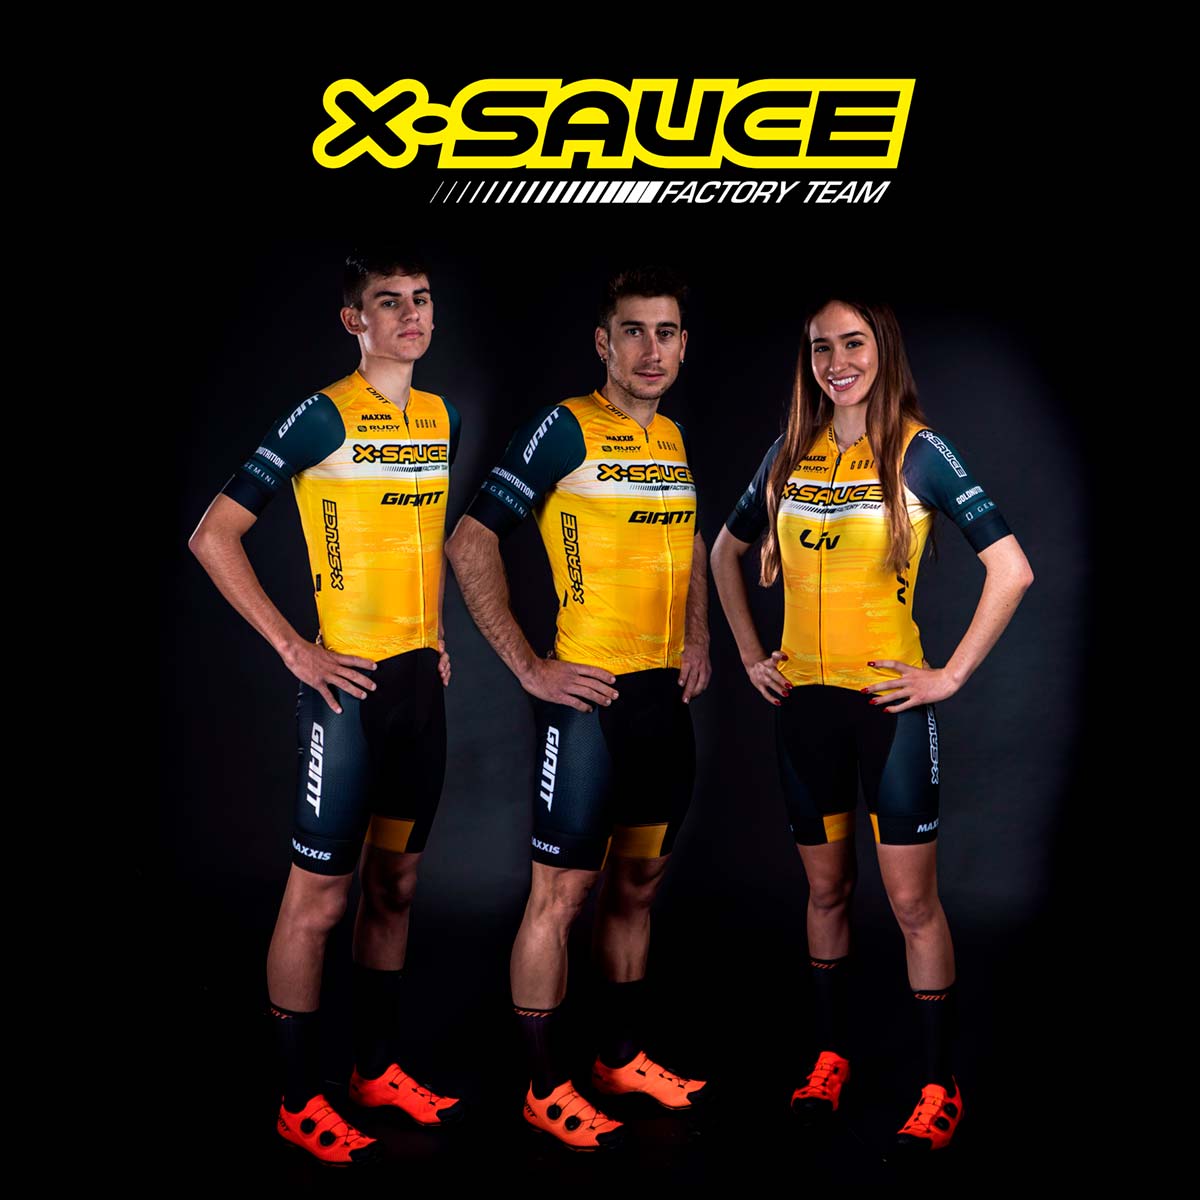 En TodoMountainBike: El X-Sauce Factory Team presenta su plantilla para la temporada 2022